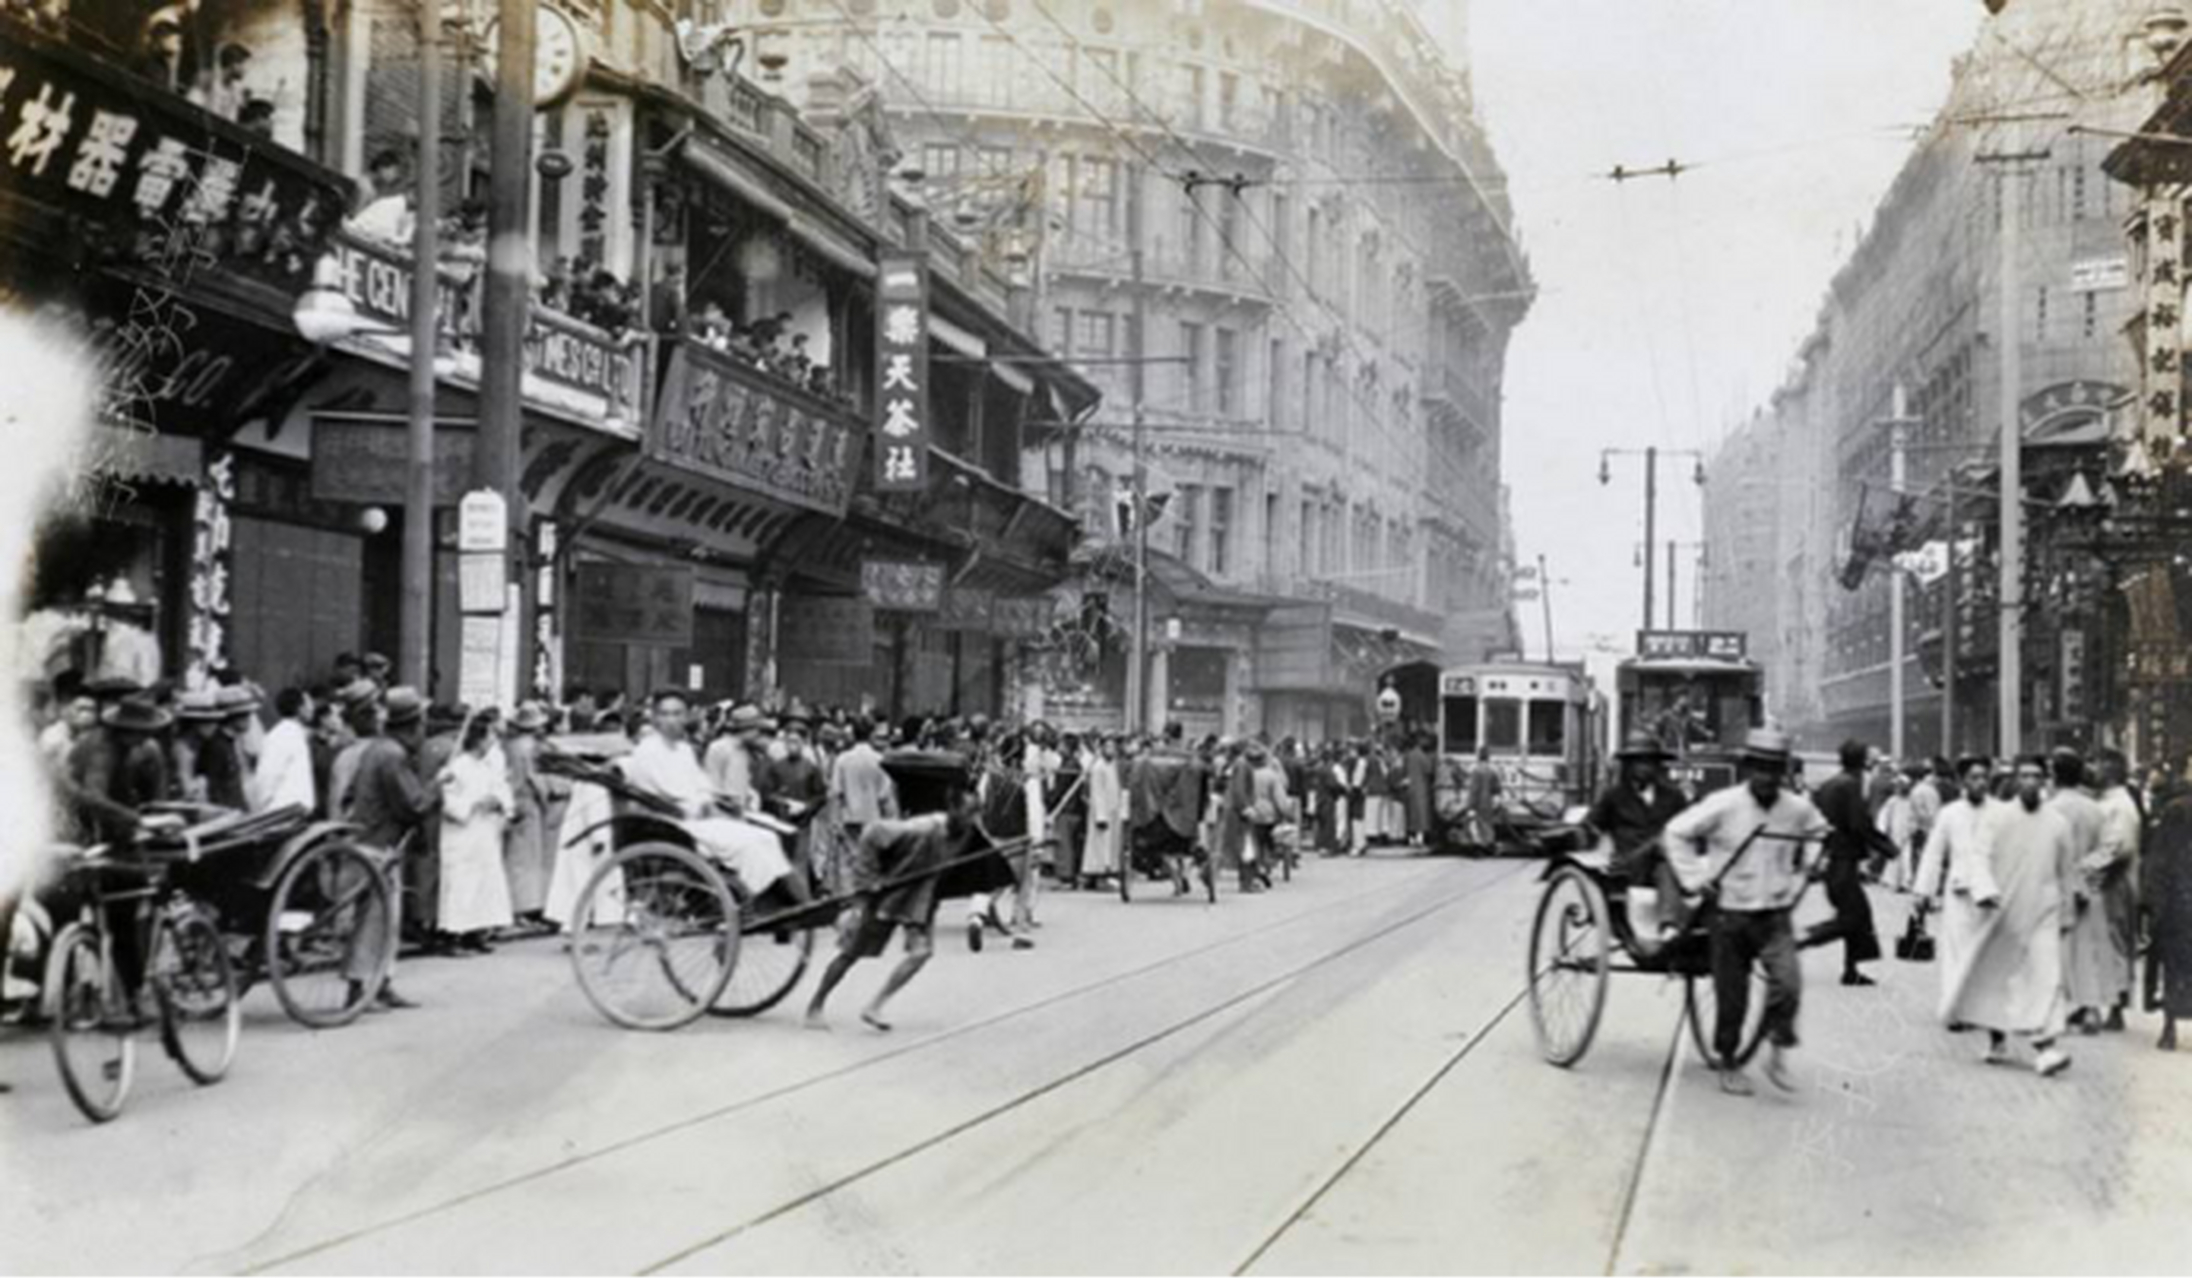 图片是民国时期的上海南京路,街道上人来人往,没有众多骑车的阻挡